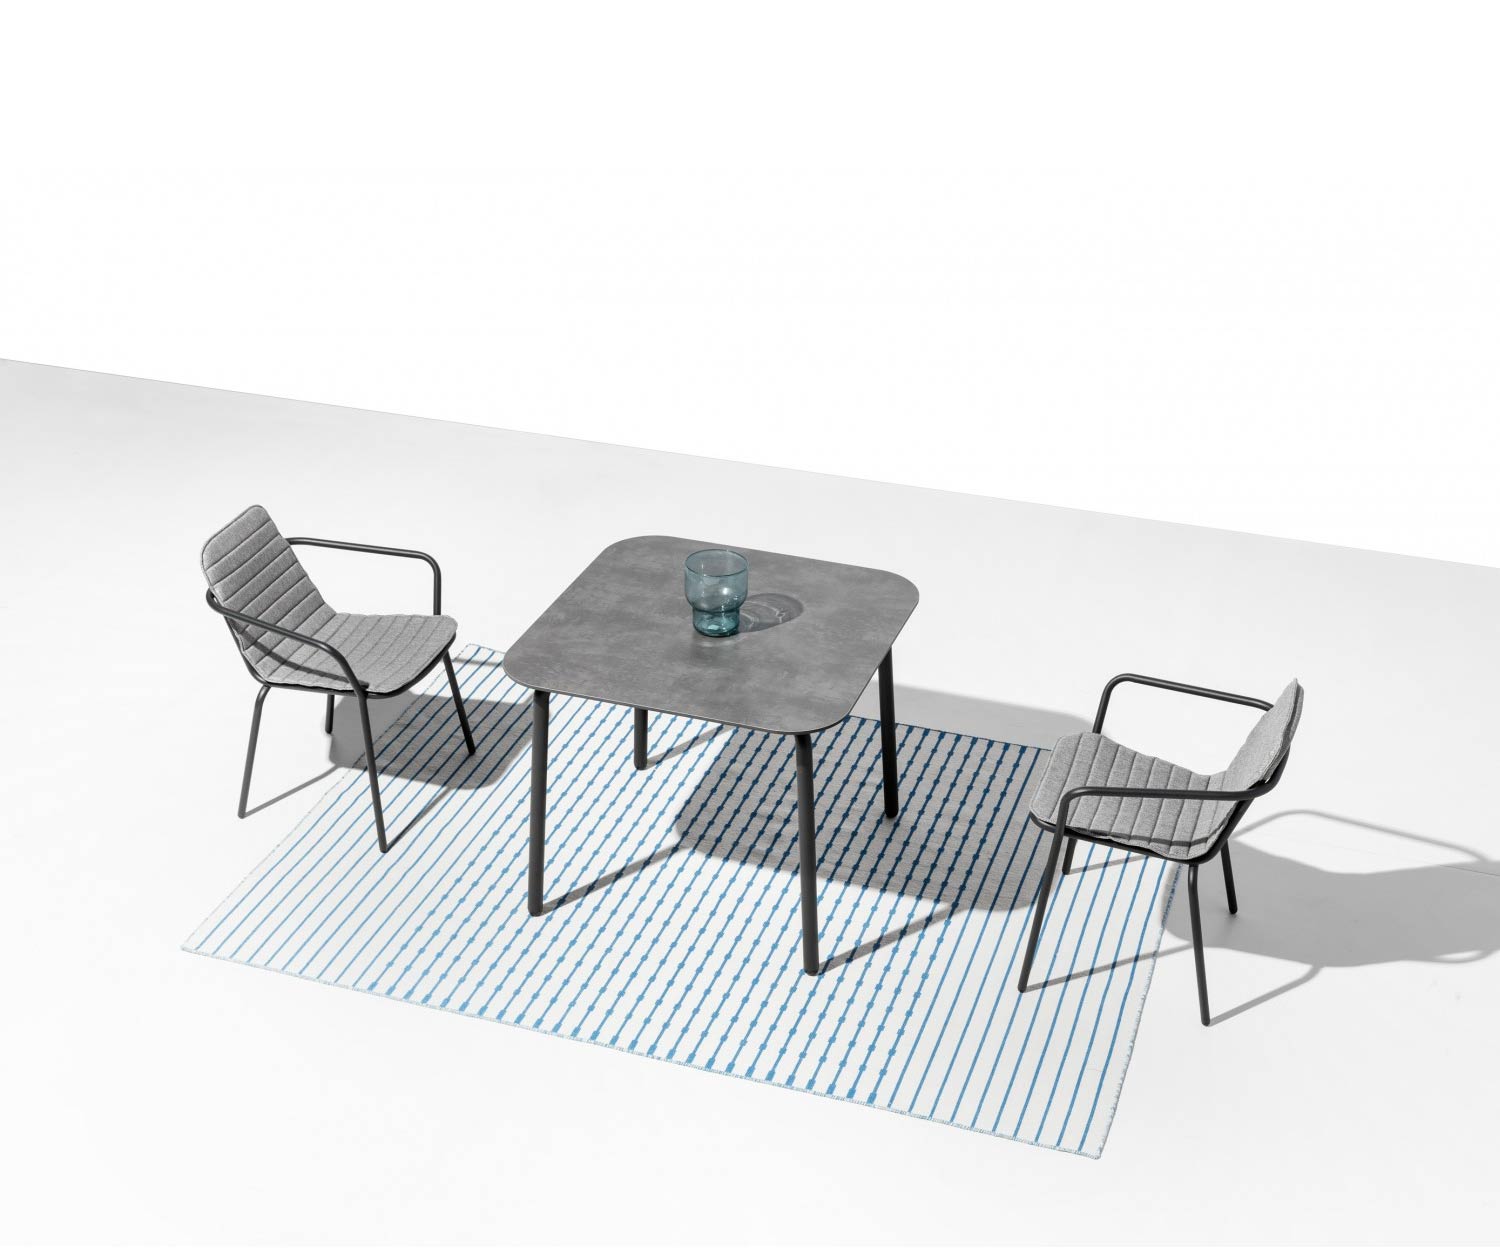 Quadratischer Design Gartentisch Starling in Dunkelgrau mit abgerundeten Ecken